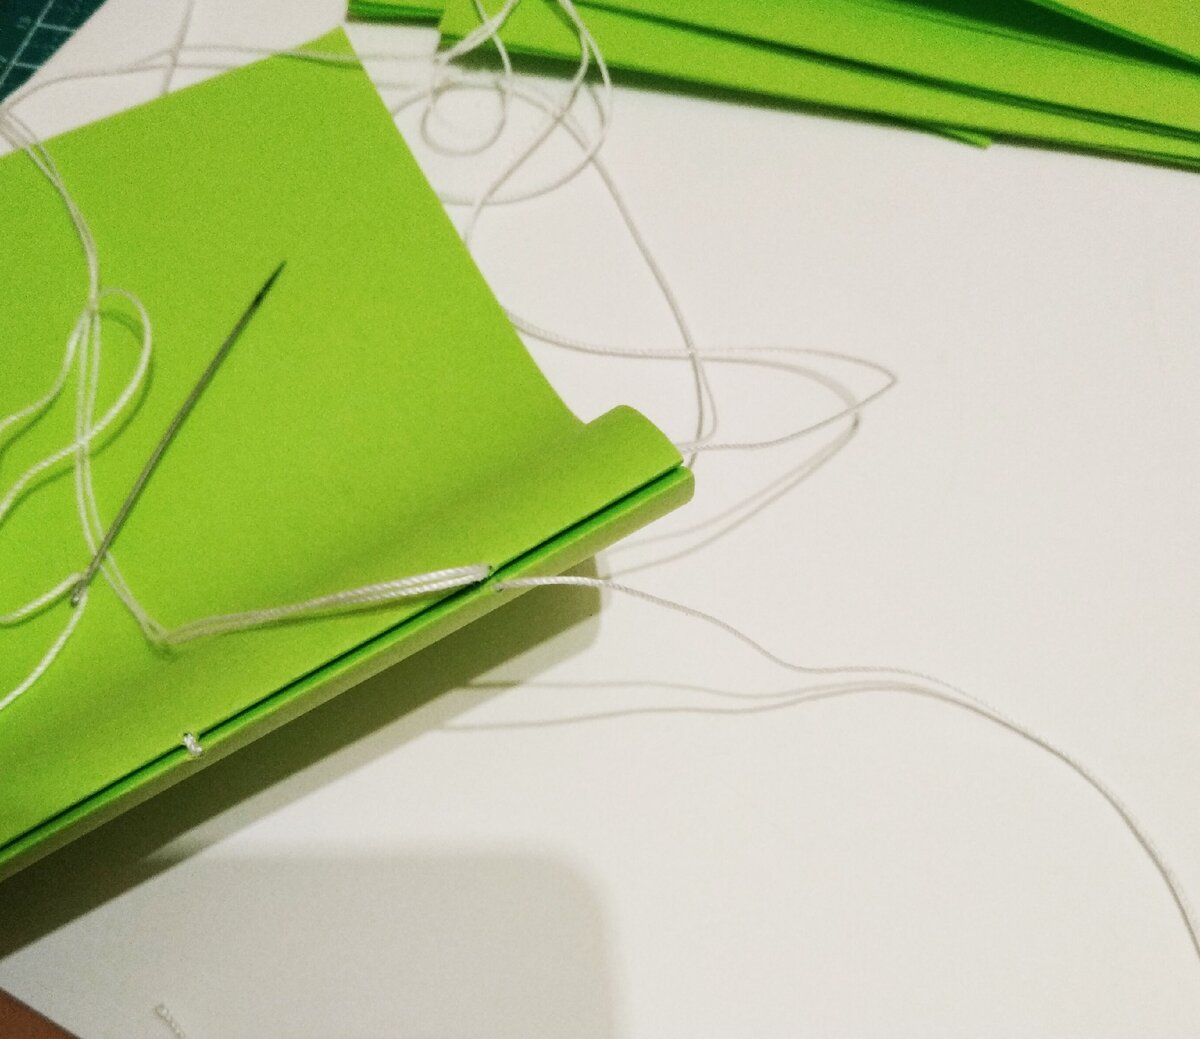 Как просто сделать Мини Блокнот из одного листа бумаги своими руками без клея | Канцелярия.notebook